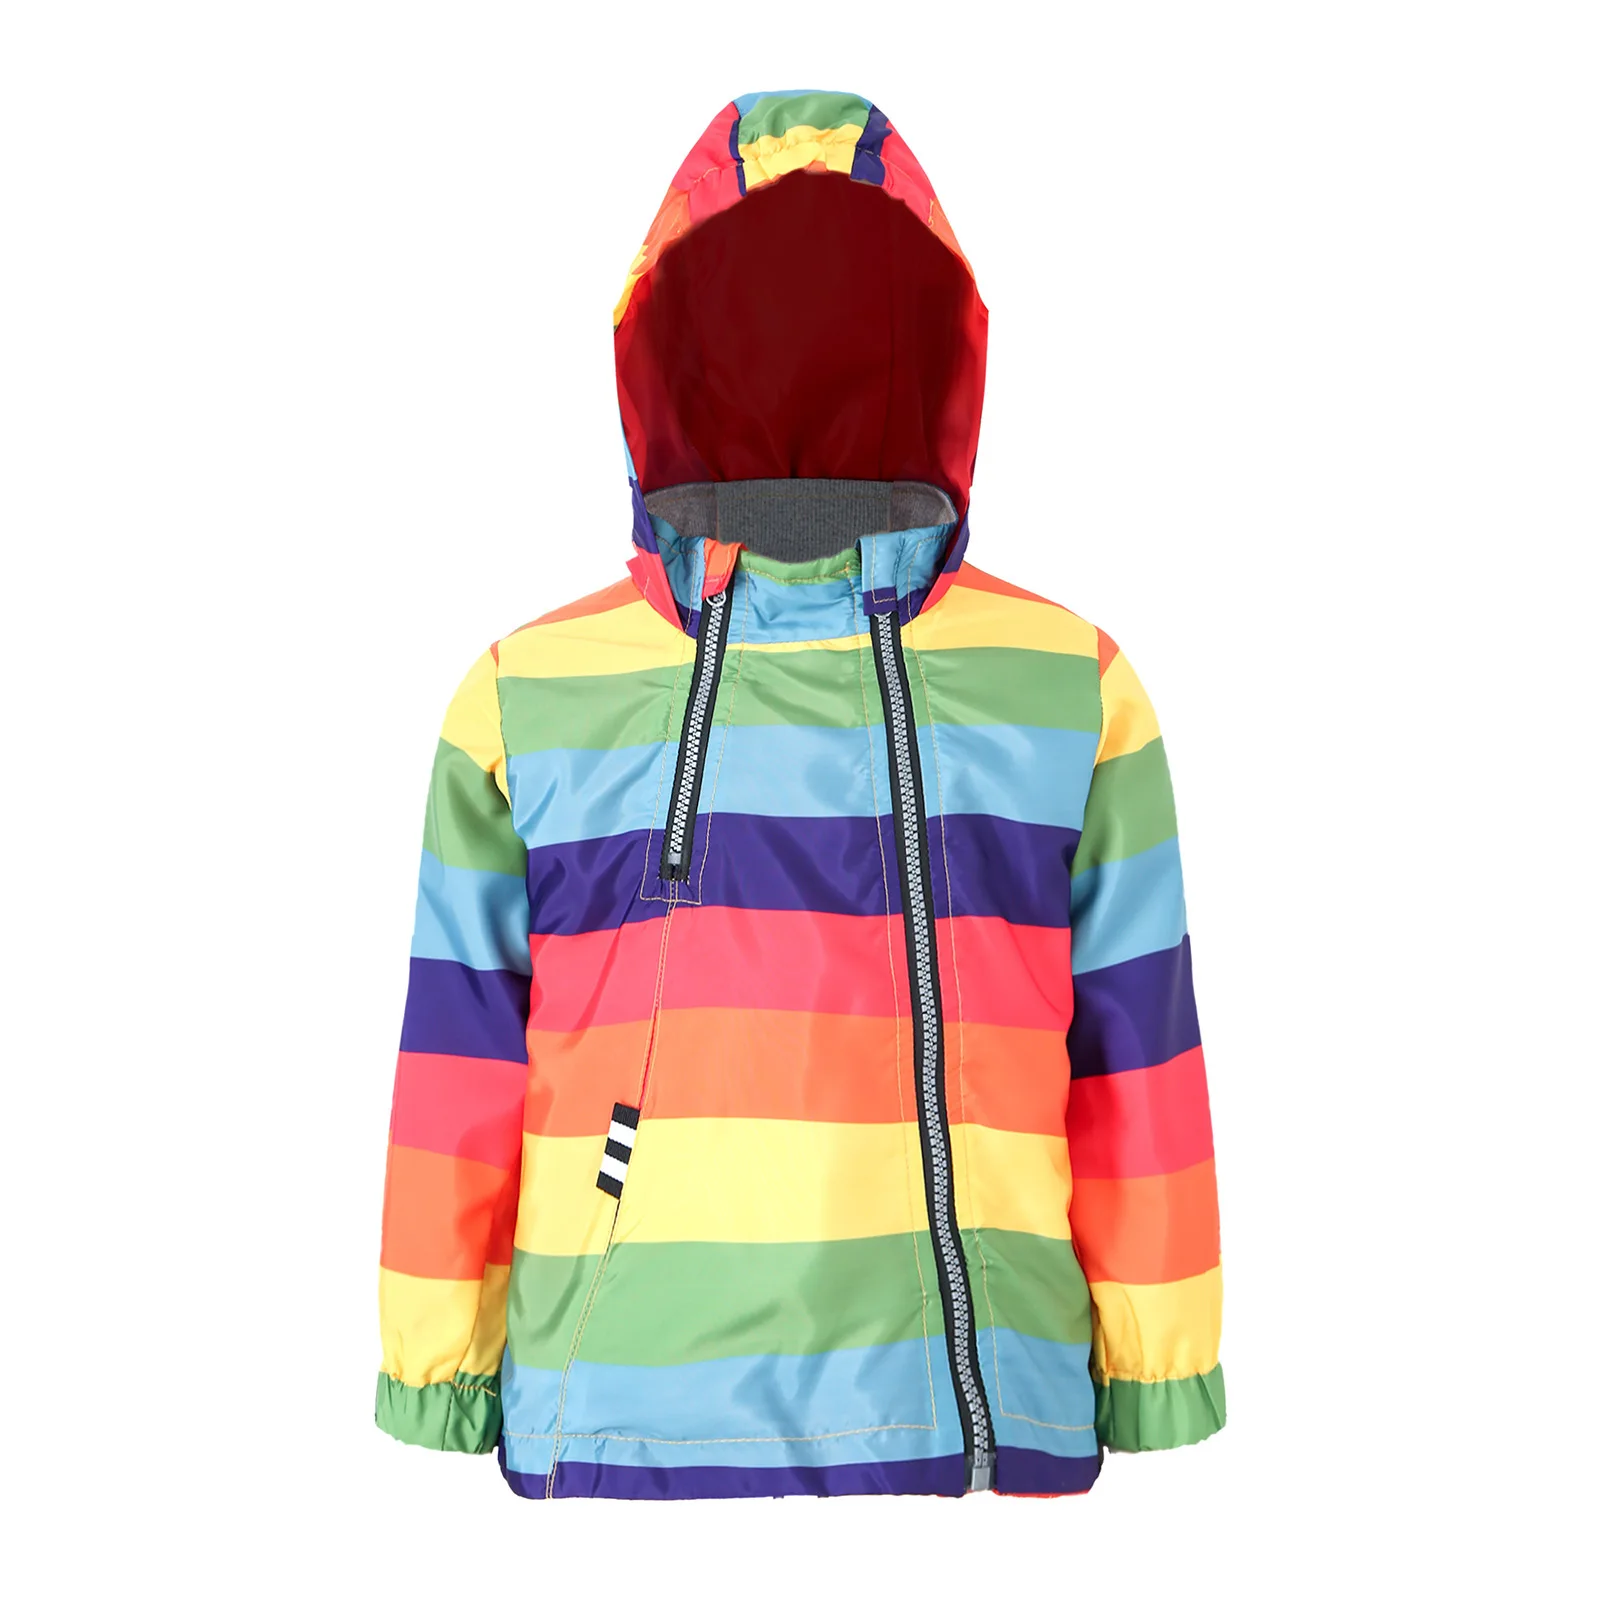 

Baby Boy Girls Zipper Rainbow Hooded Jacket Fashion Cartoon Long Sleeve Windproof Casual Outerwear Kids Hoodie Style Outwear Top